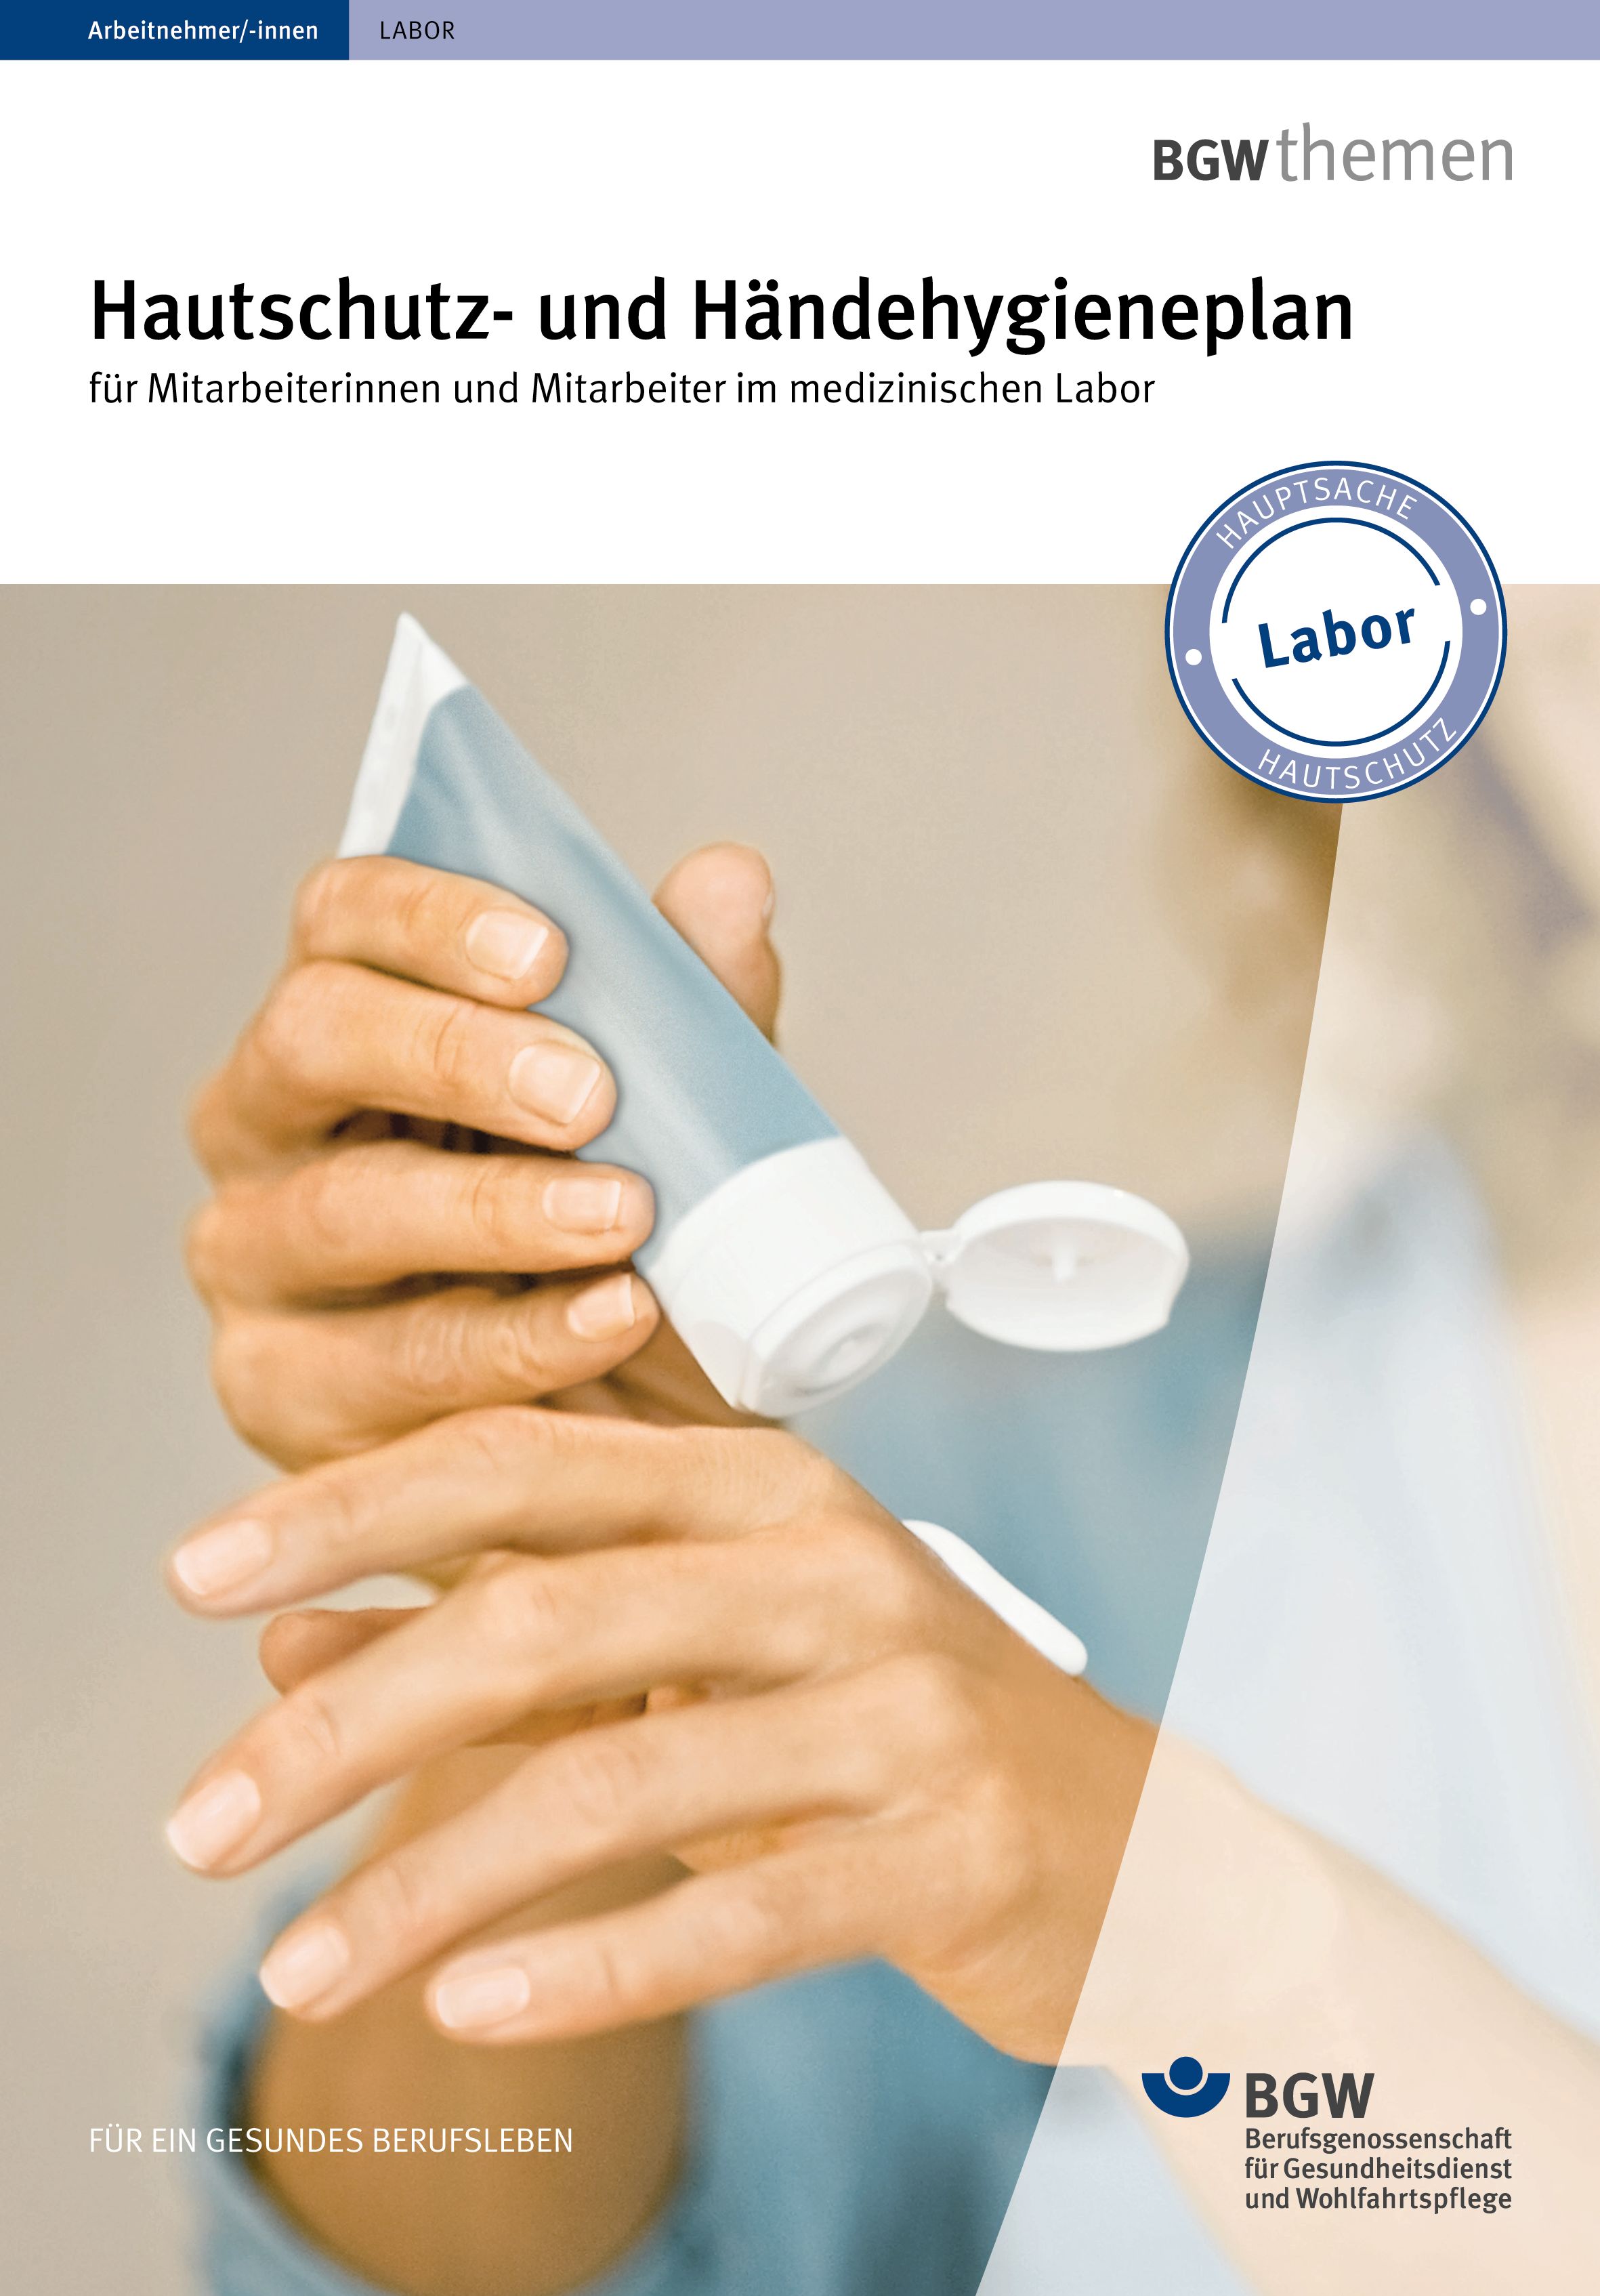 Titel: Hautschutz- und Händehygieneplan für Mitarbeiterinnen und Mitarbeiter im medizinischen Labor - Junge Frau appliziert sich Handcreme aus der Tube auf die Hand.